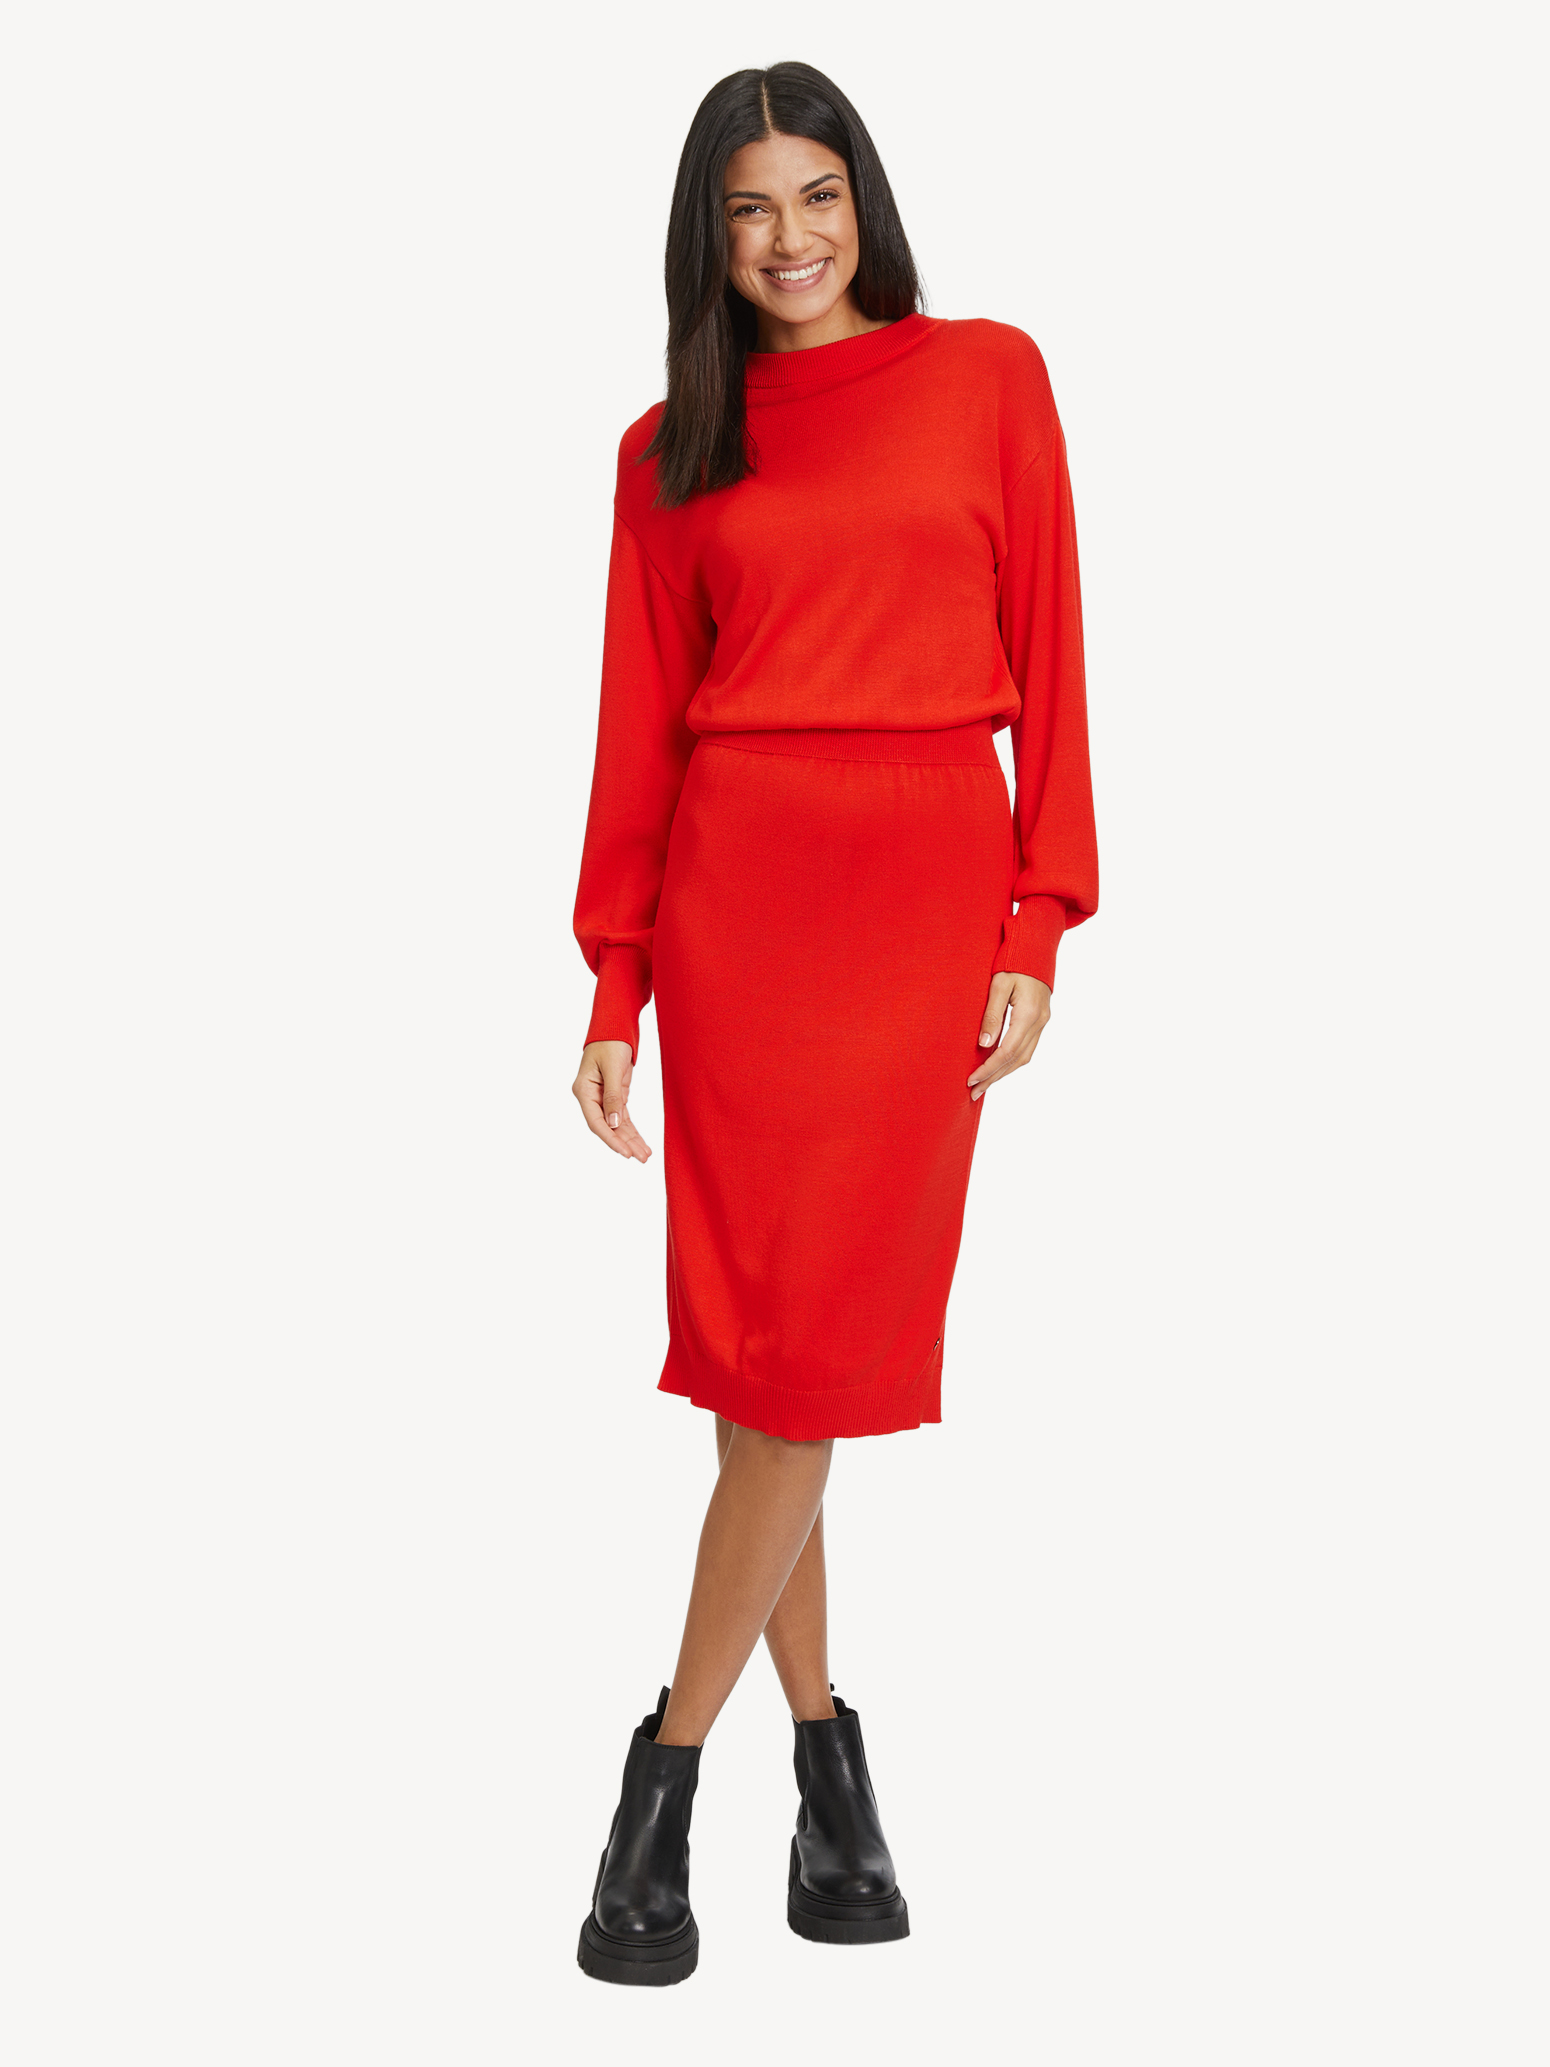 kaufen! Kleid Röcke & - Tamaris Kleider rot TAW0329-30042: online